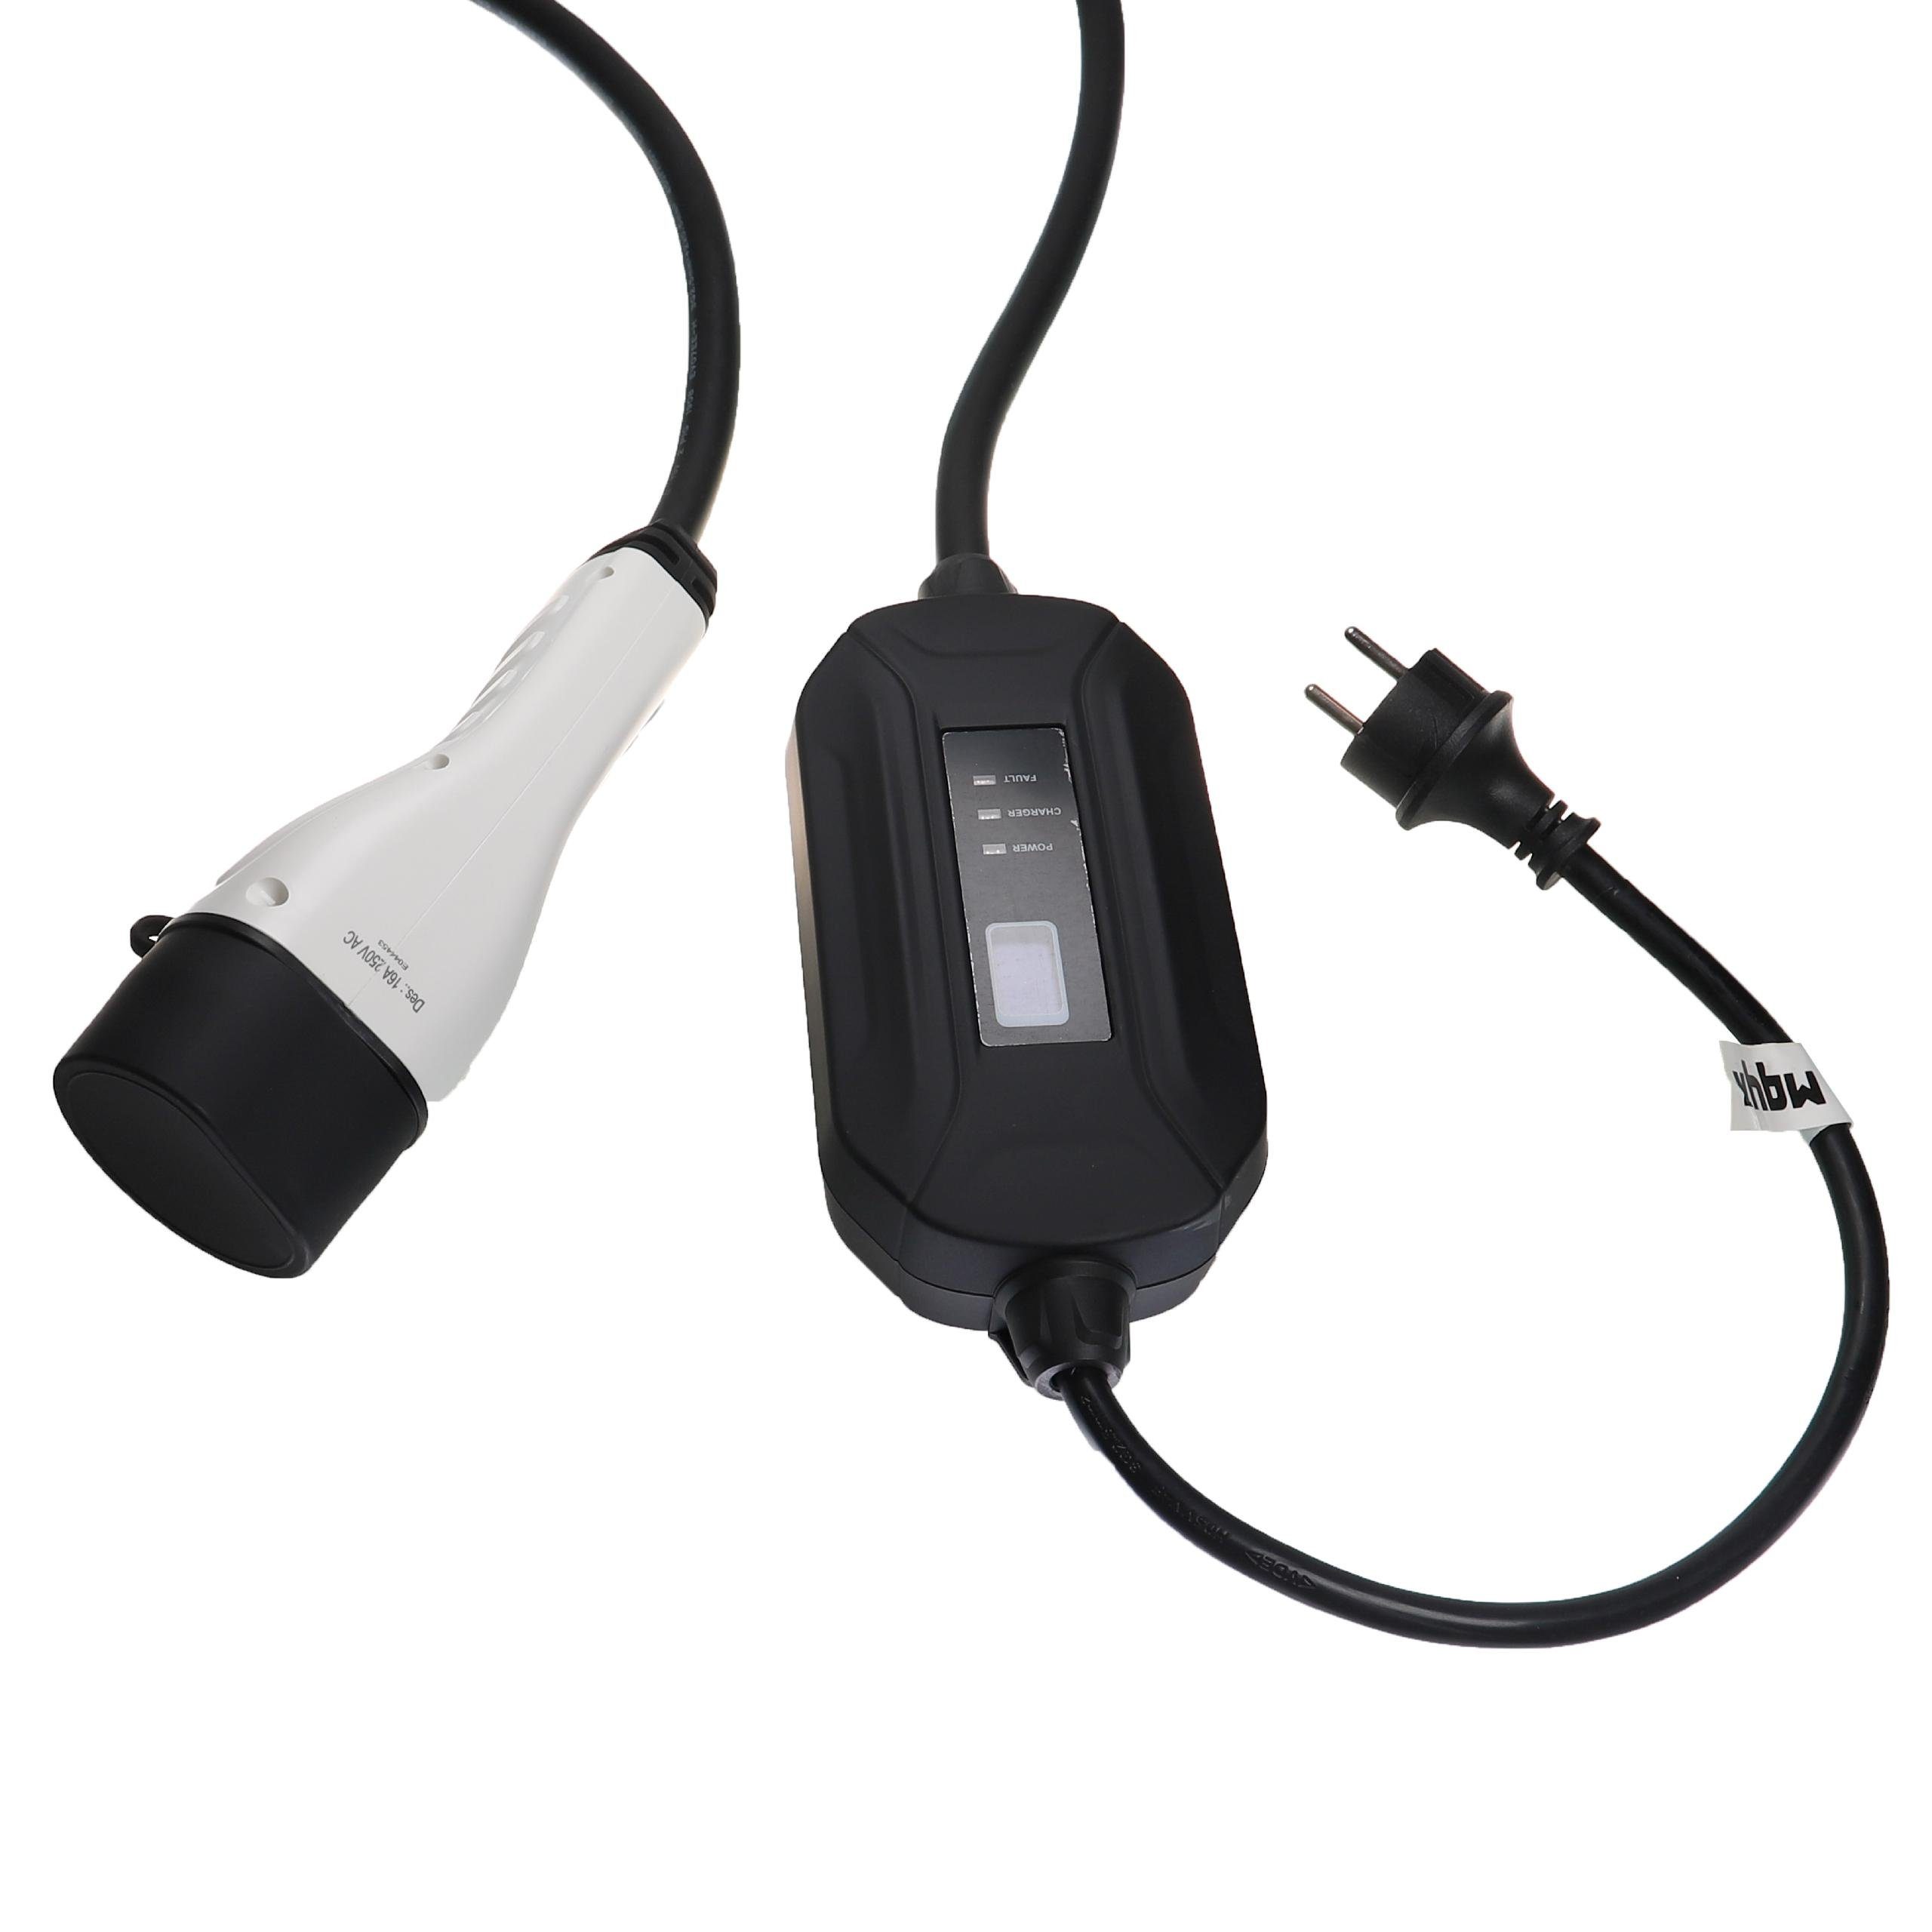 Elektro-Kabel passend / für Eclipse vhbw Mitsubishi Hybrid In Plug Elektroauto